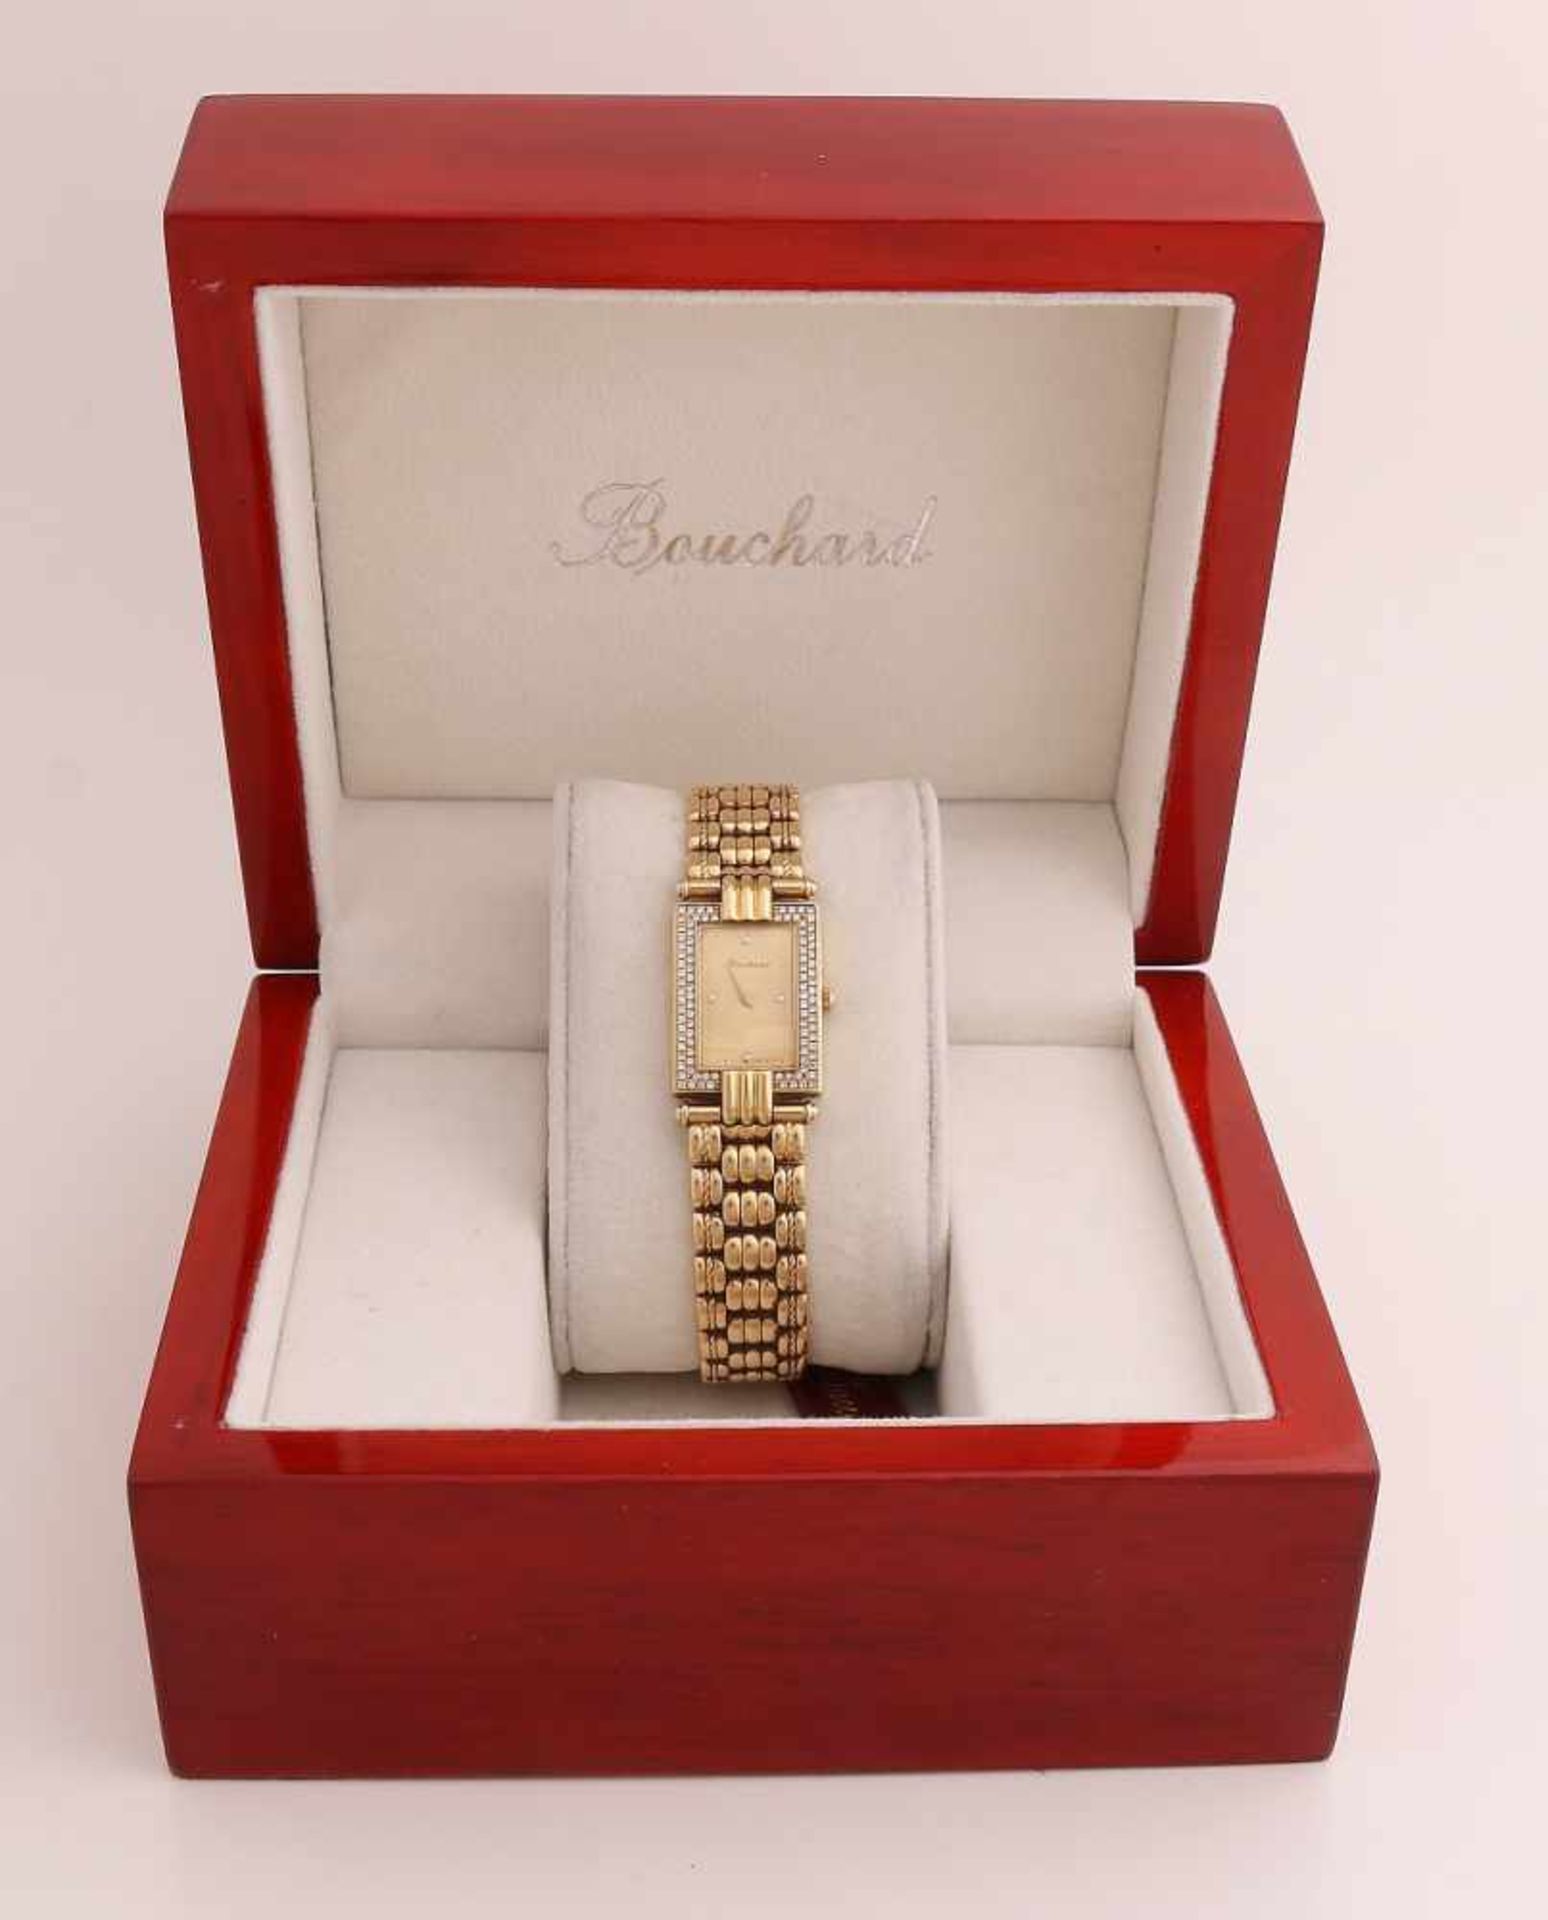 Gelbgold Bouchard Damenuhr, 750/000, mit Diamanten. Uhr mit einem rechteckigen Gehäuse, 24 x 18